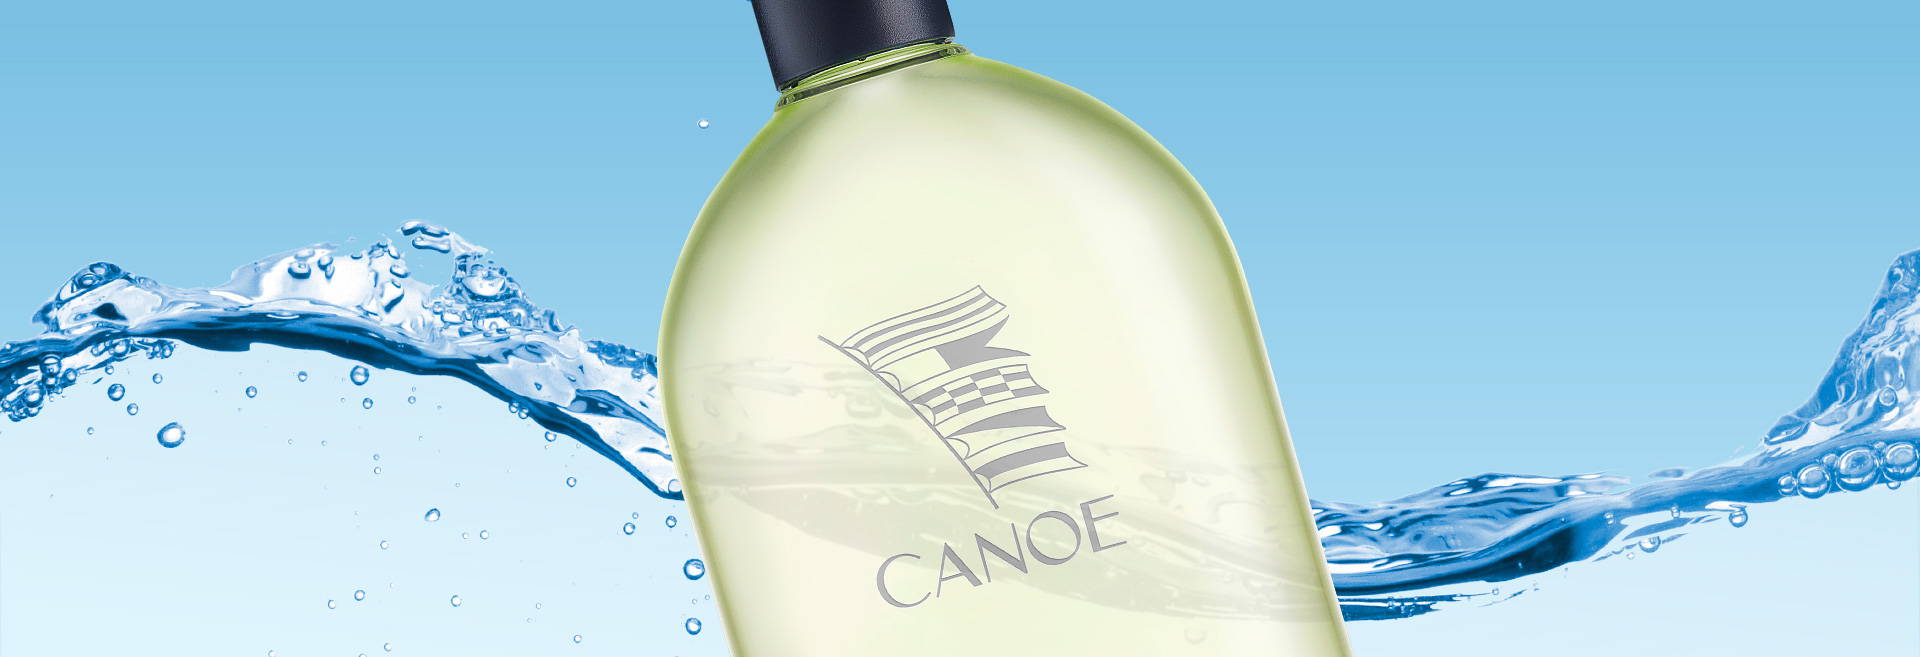  bottle of canoe eau de toilette on background of splash wave, ocean